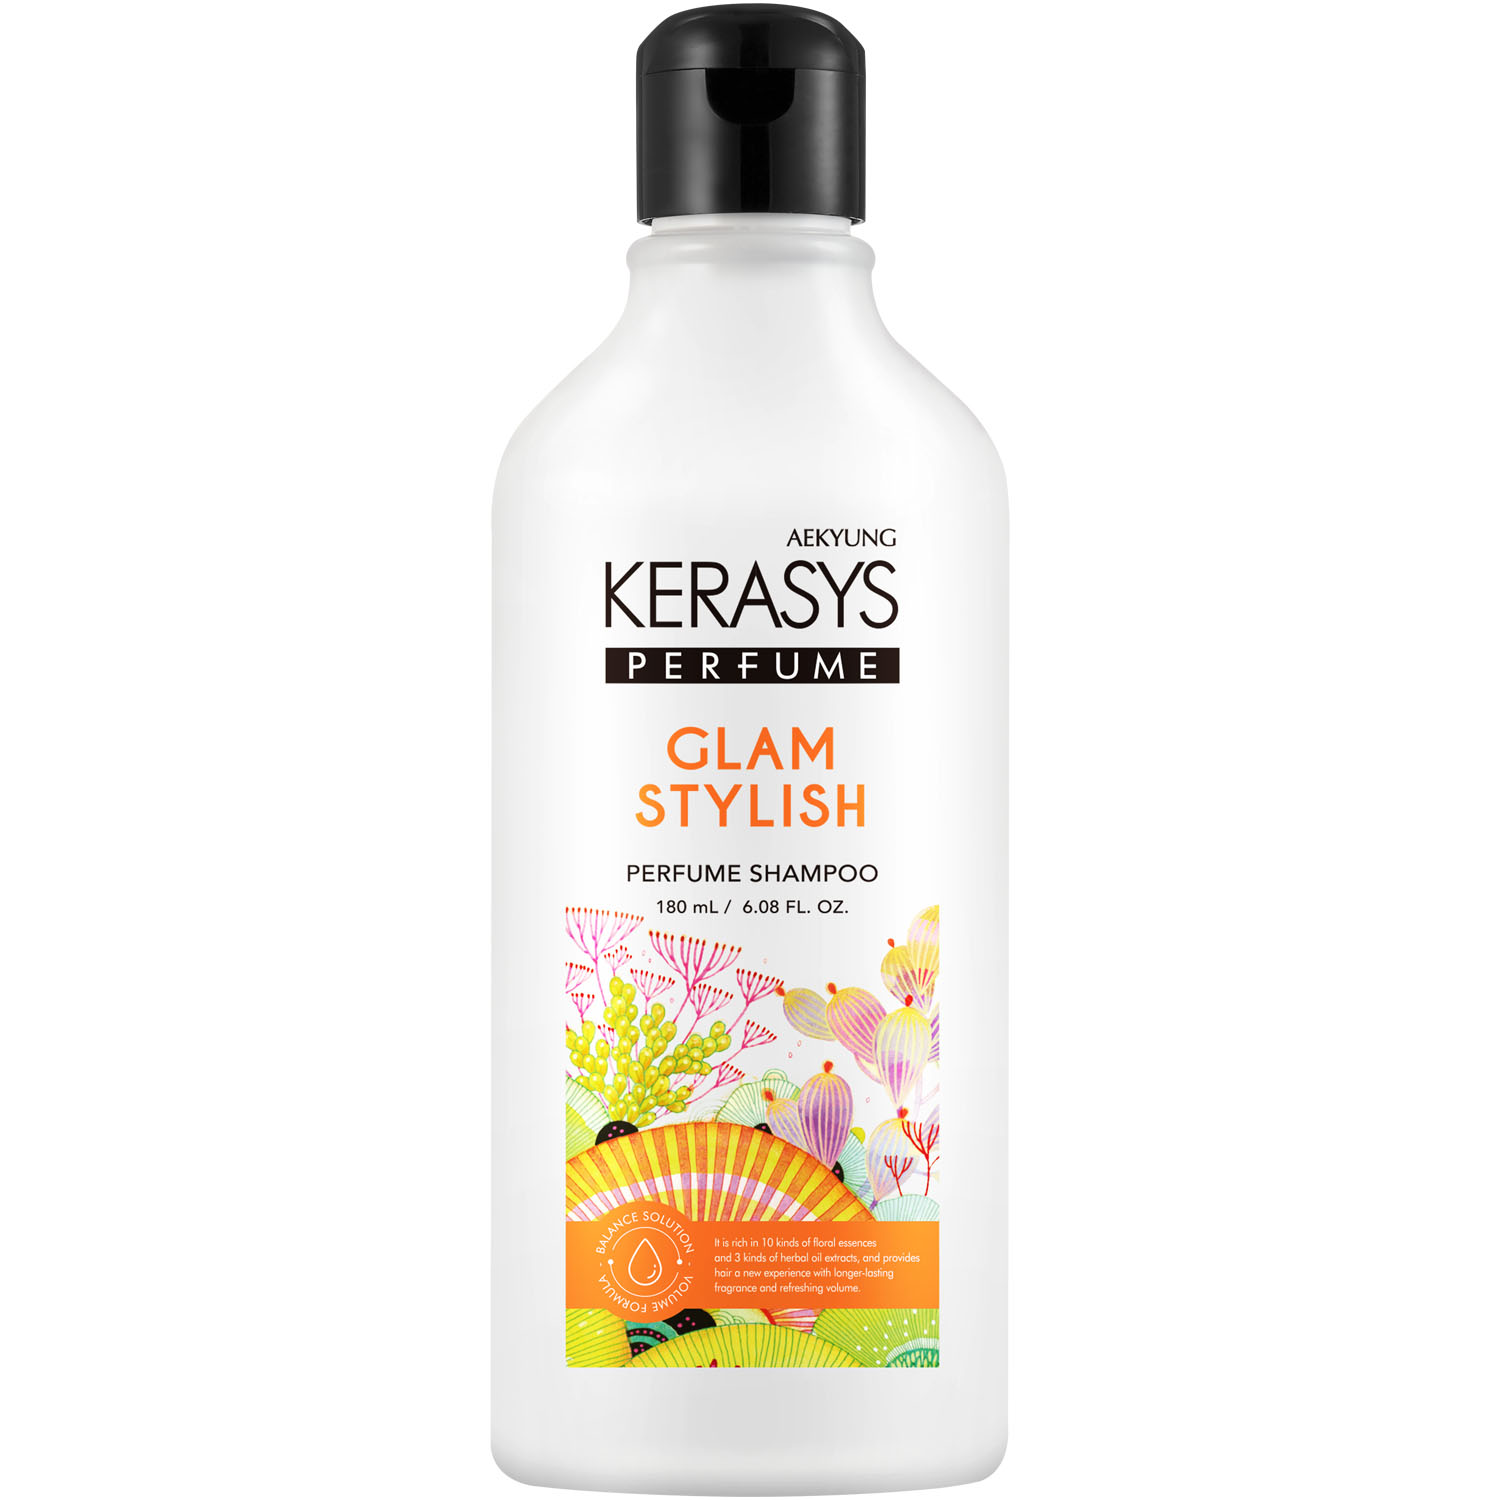 Kerasys Шампунь для всех типов волос Glam Stylish, 180 мл (Kerasys, Perfumed Line) цена и фото